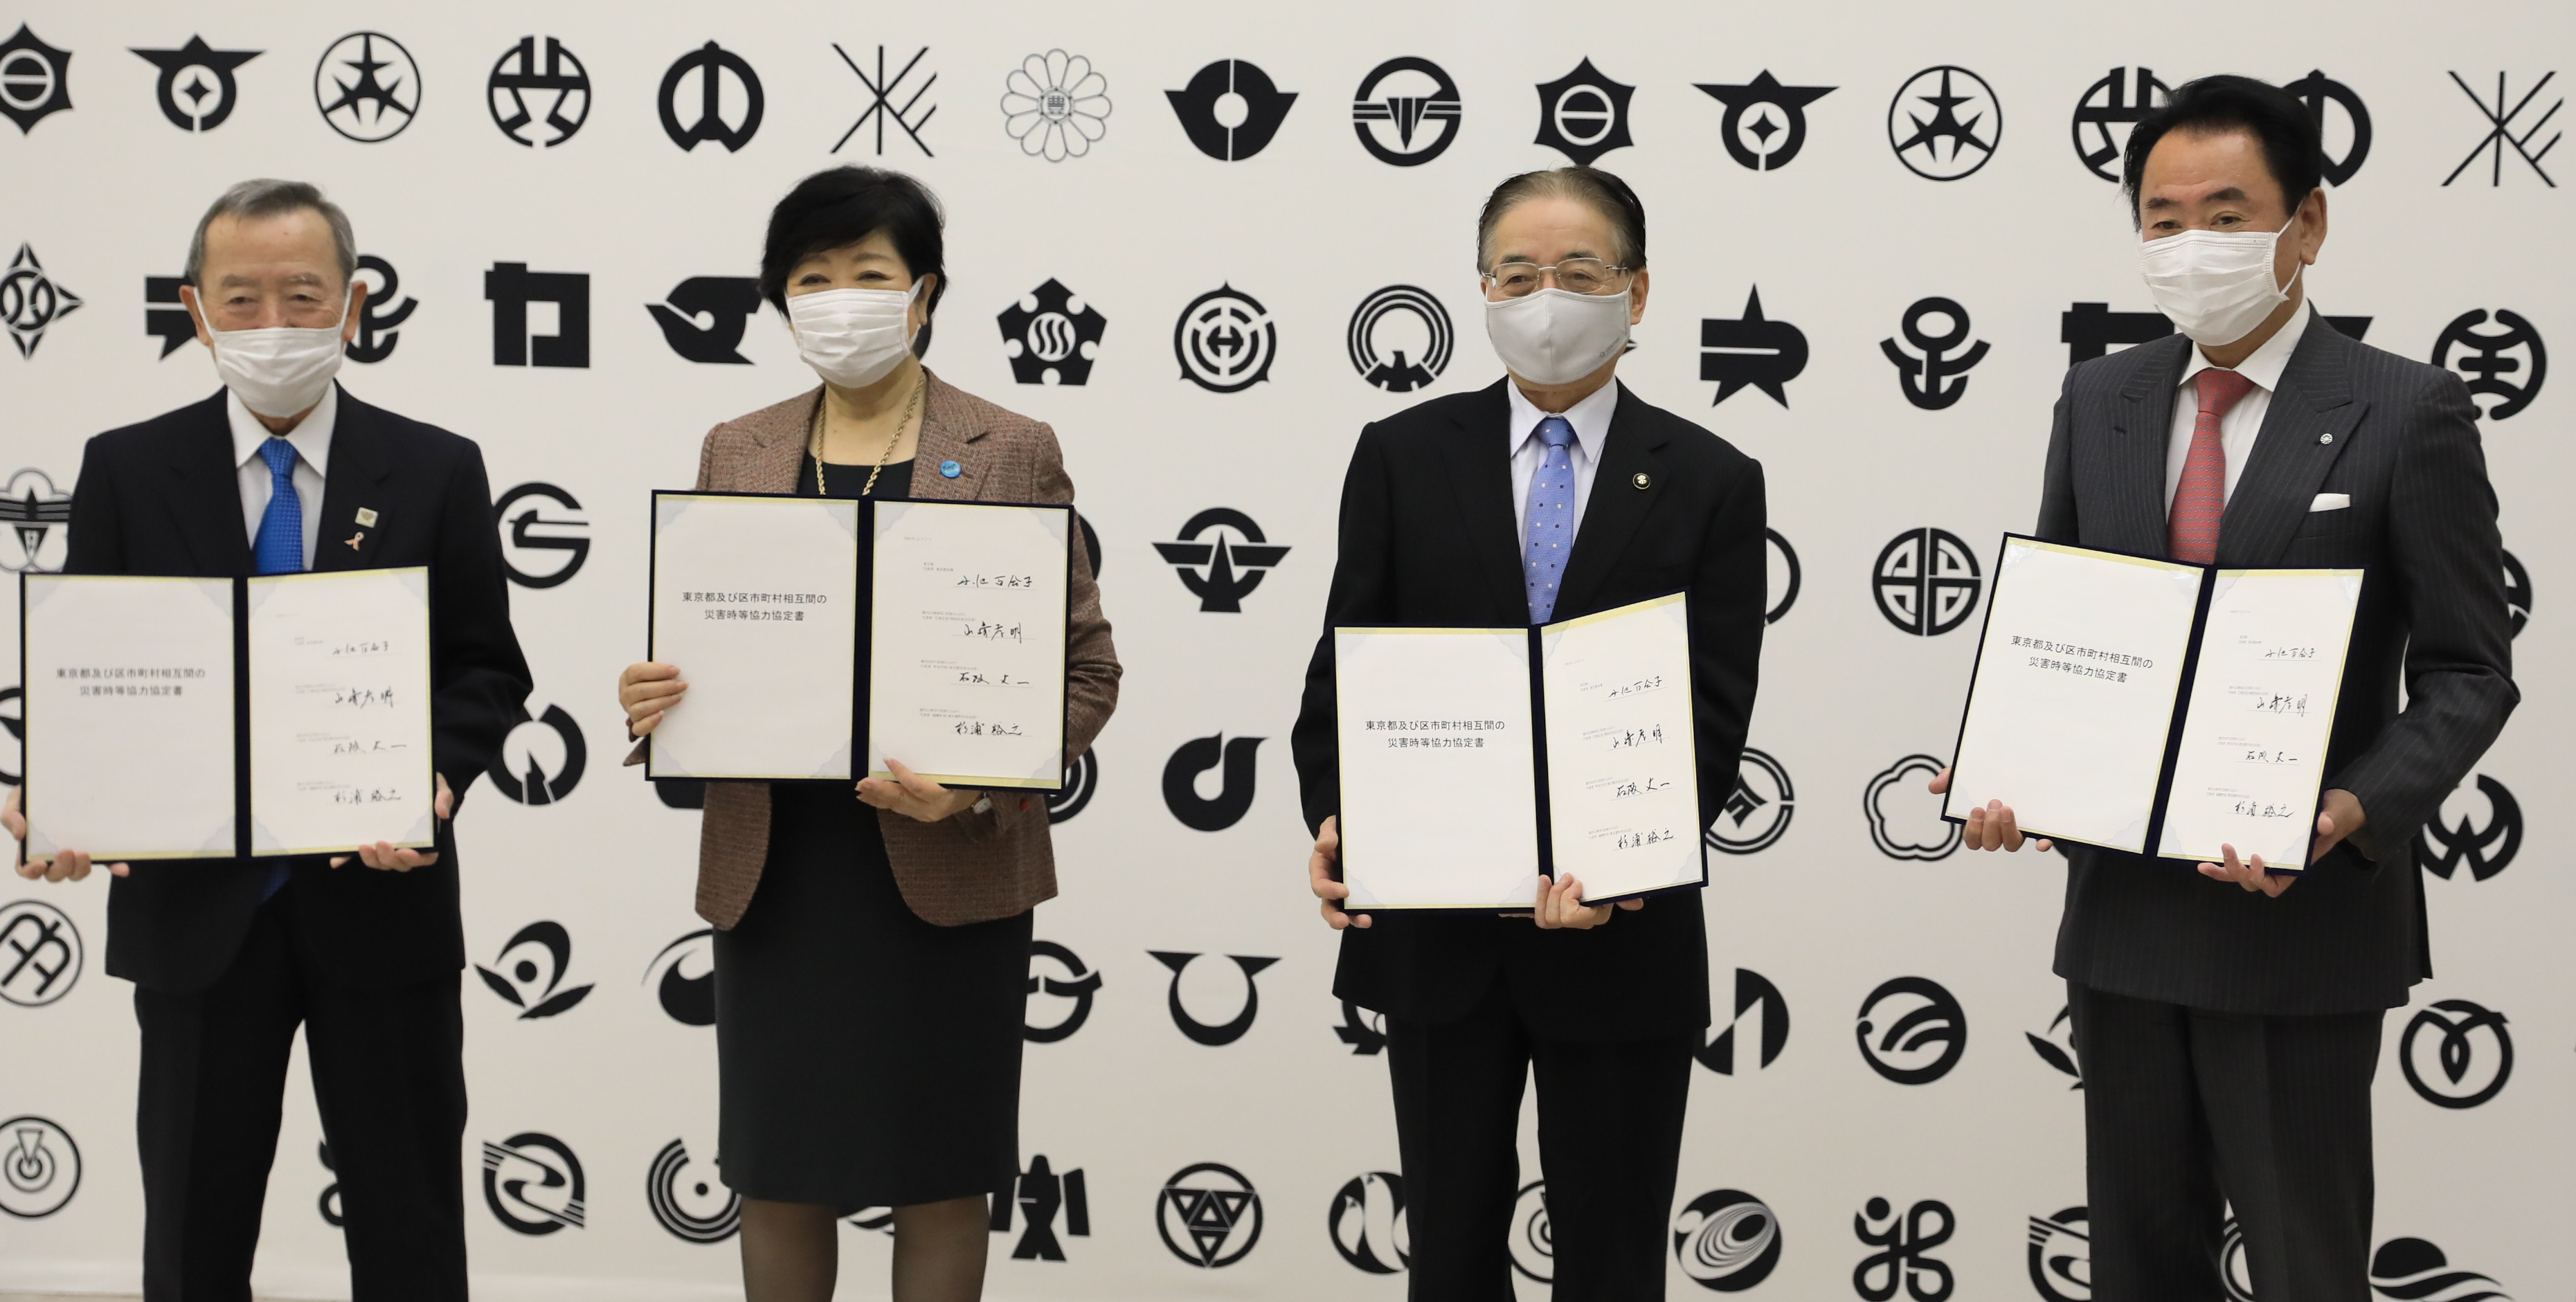 東京都及び区市町村相互間の災害時等協力協定締結式を行いました。